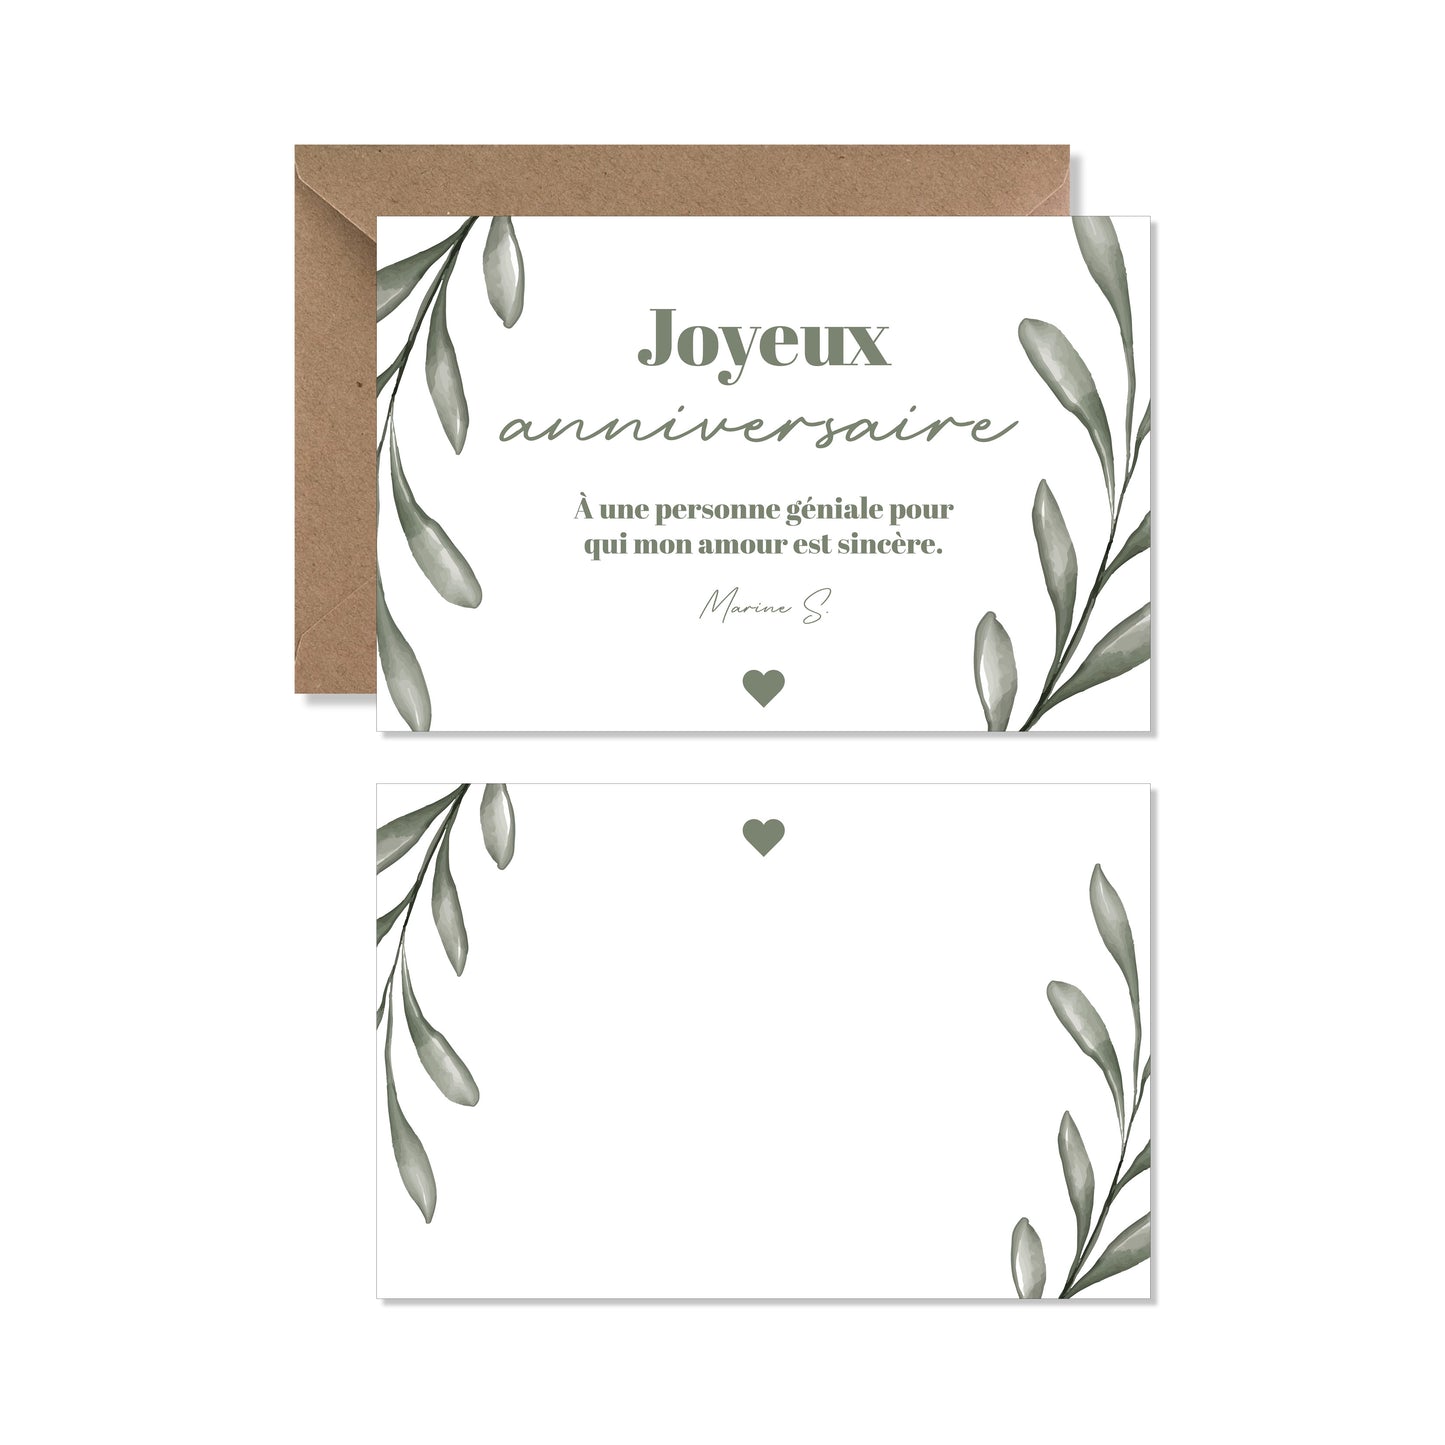 Cartes de vœux anniversaire personnalisée olivier